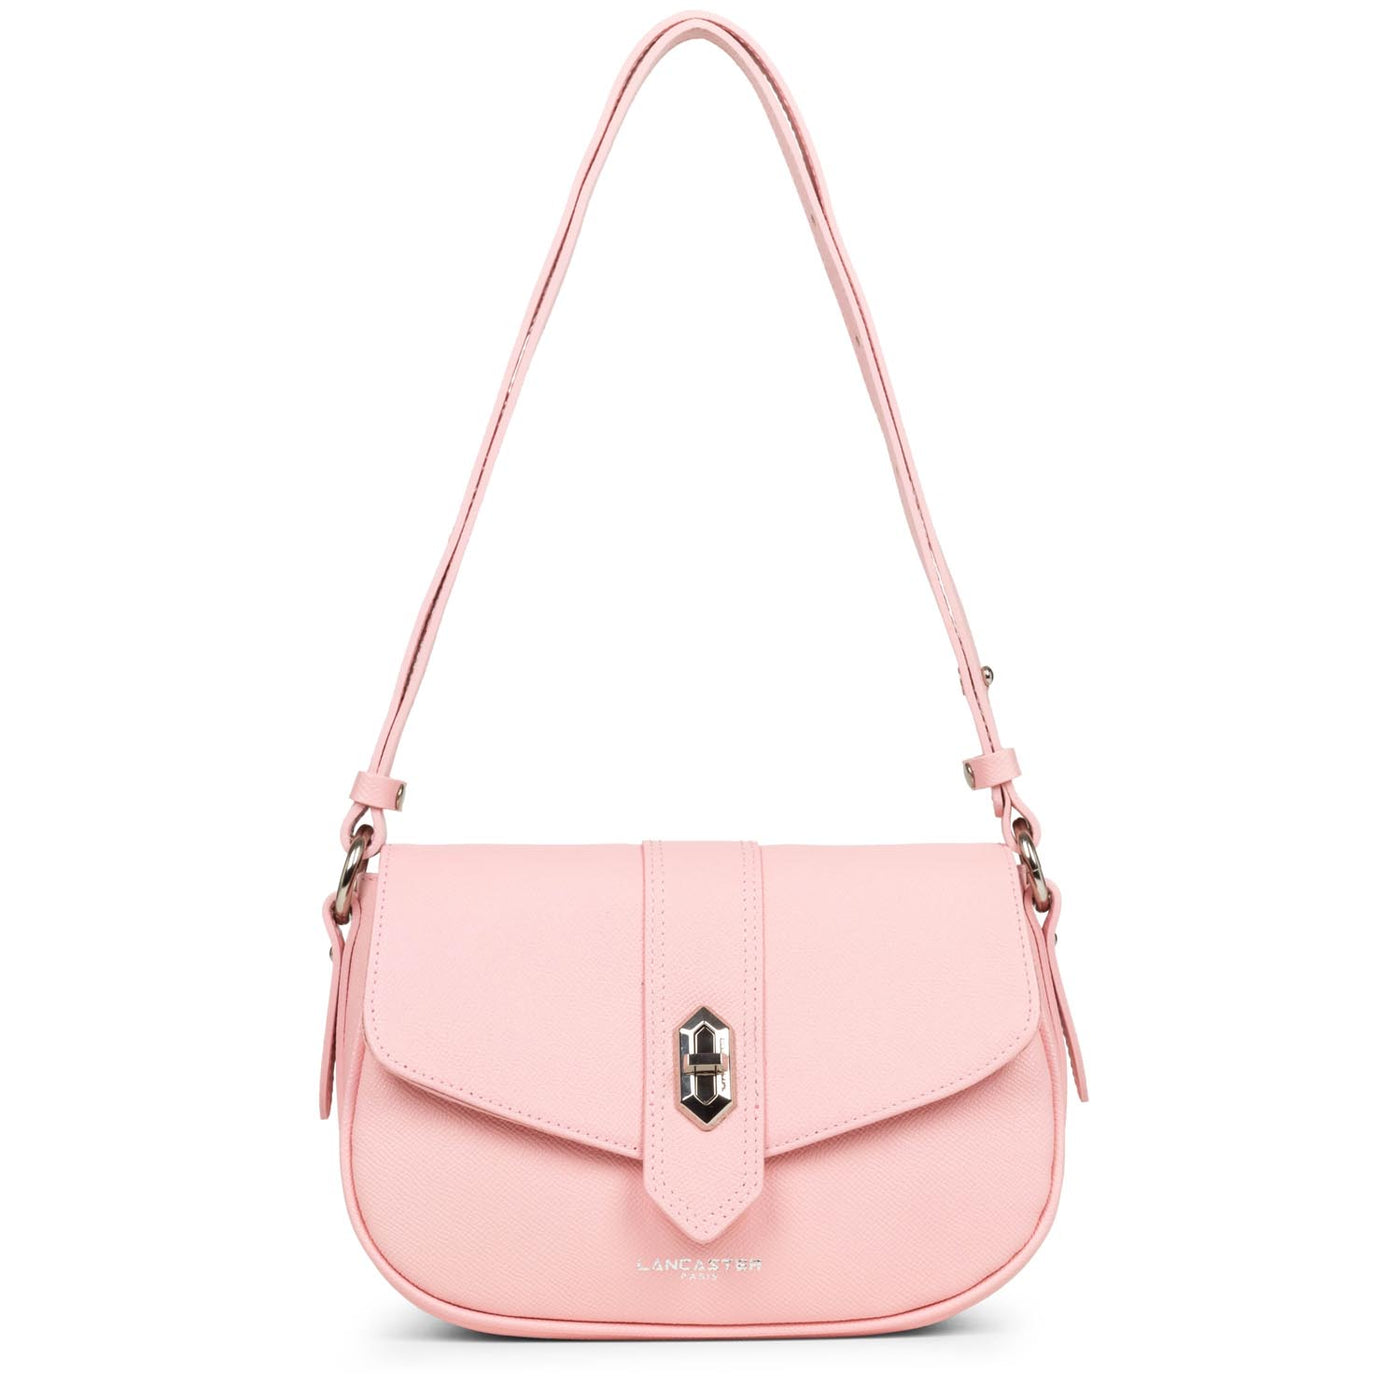 shoulder bag - delphino it #couleur_rose-clair